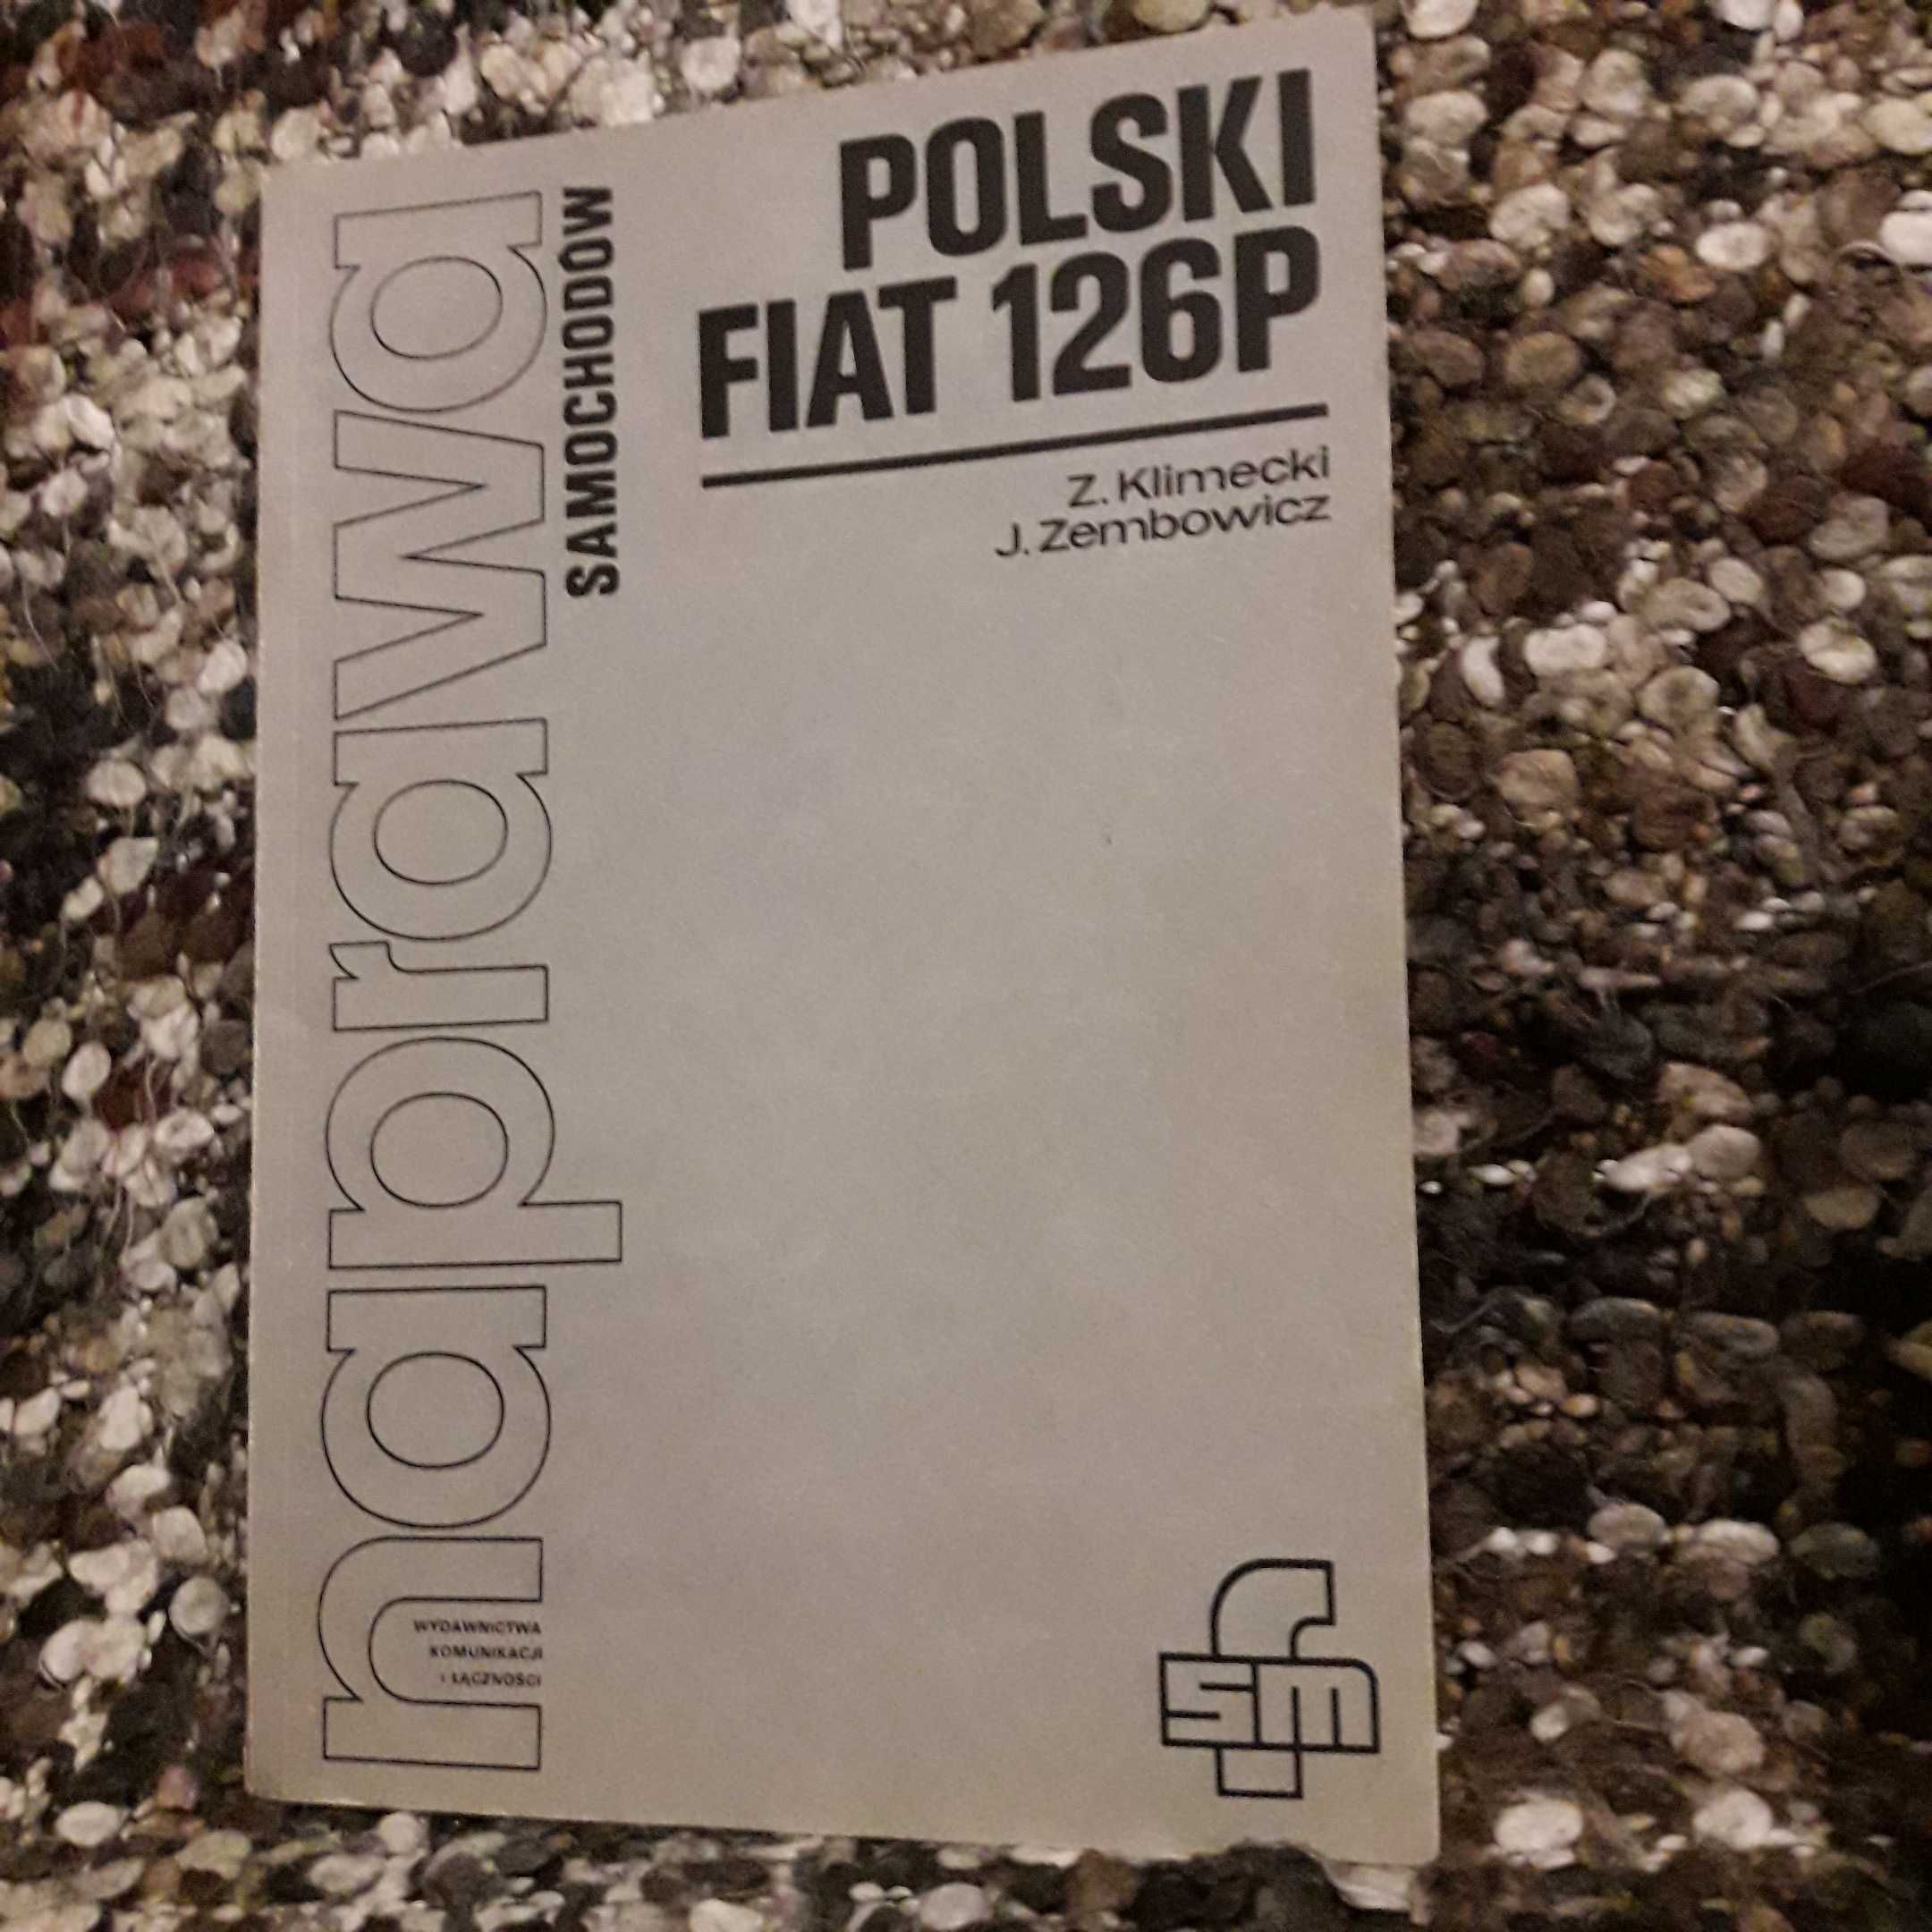 Naprawa samochodów polski Fiat 126p - Klimecki, Zembowicz